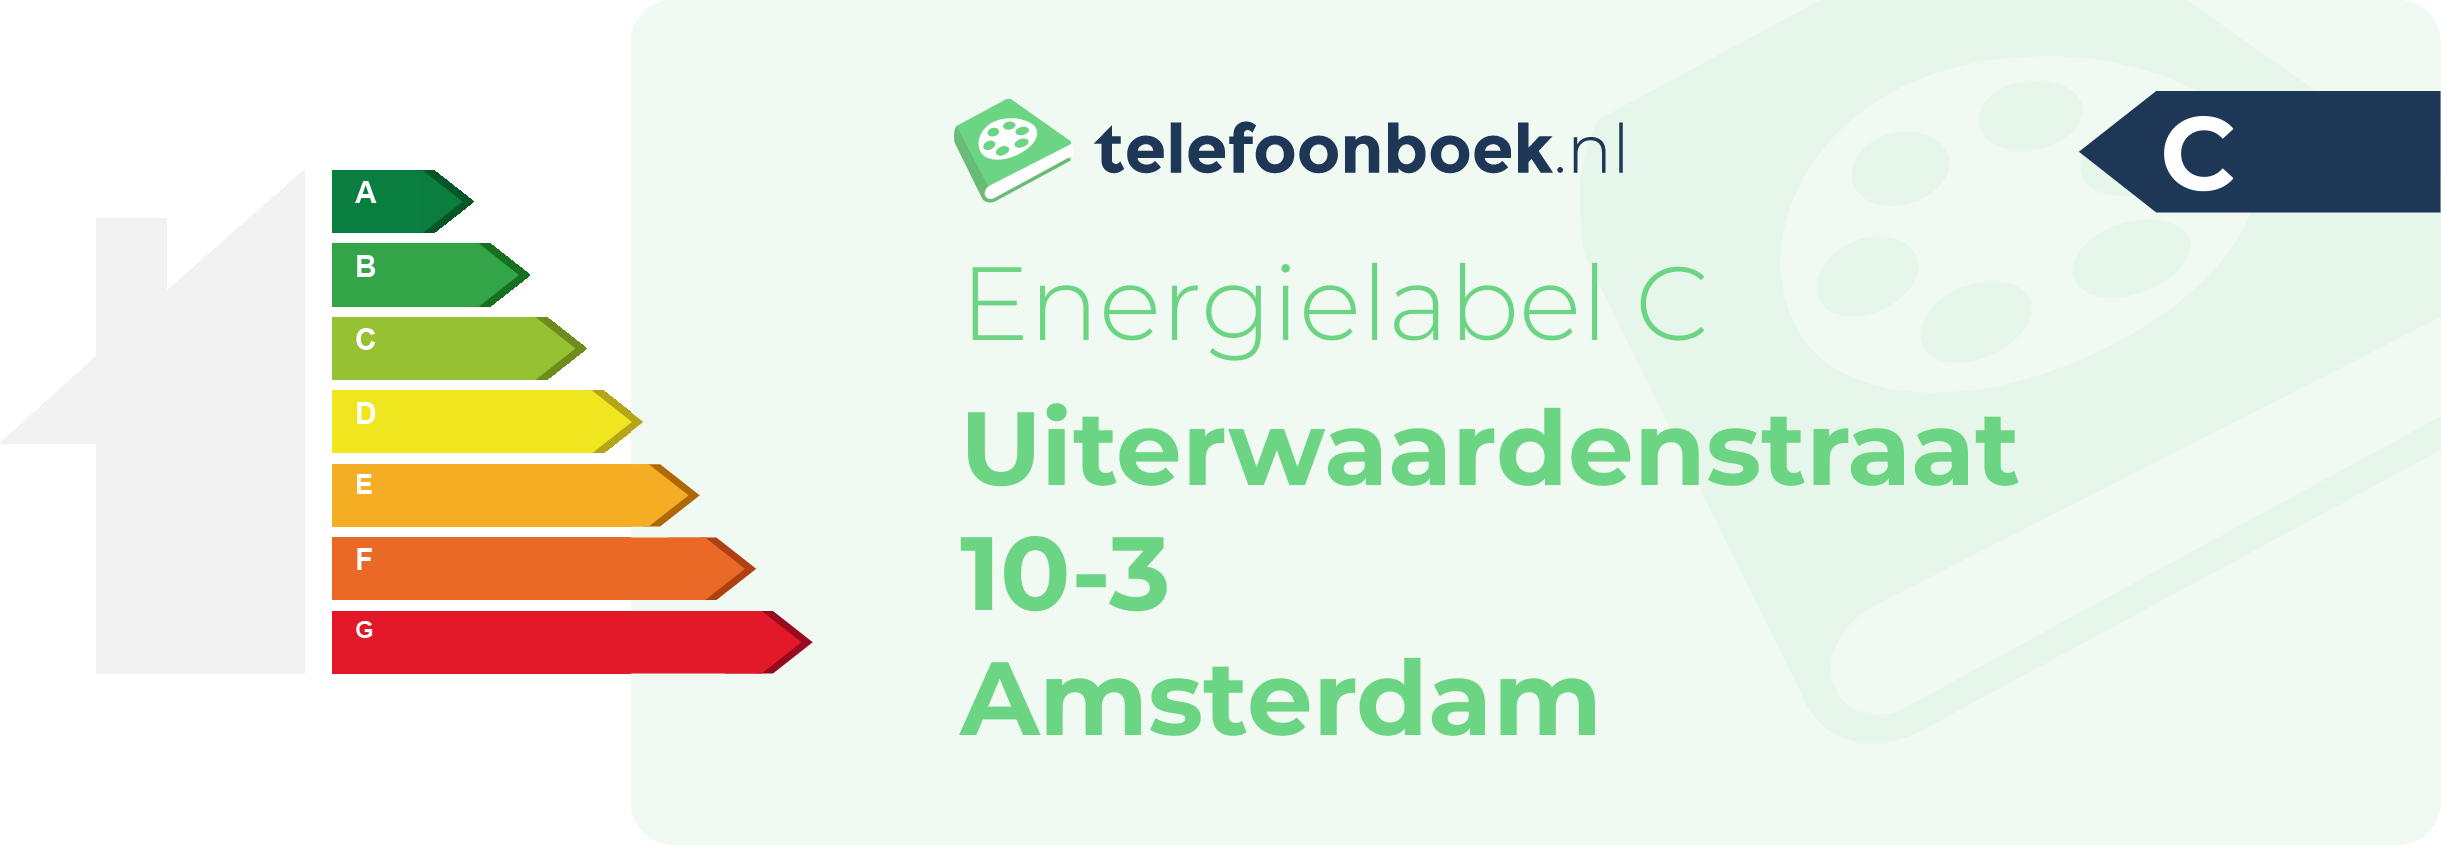 Energielabel Uiterwaardenstraat 10-3 Amsterdam